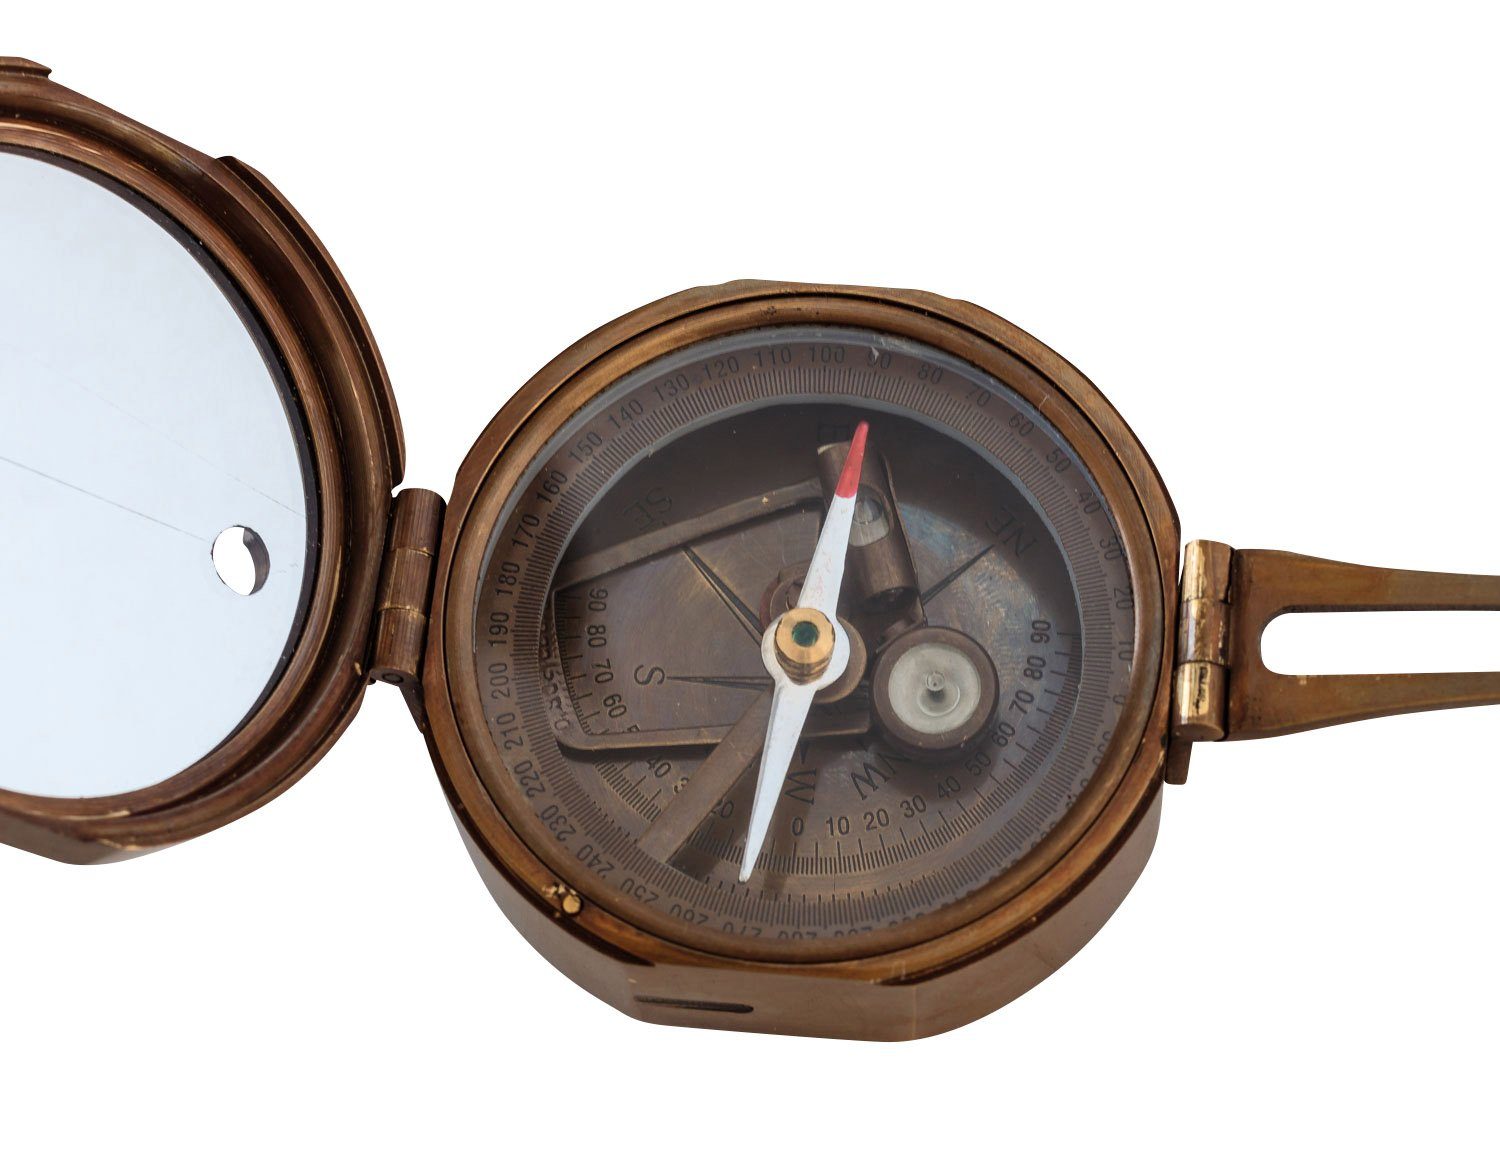 Aubaho Kompass Kompass Peilkompass Glas Messing Navigation Maritim Antik-Stil Replik